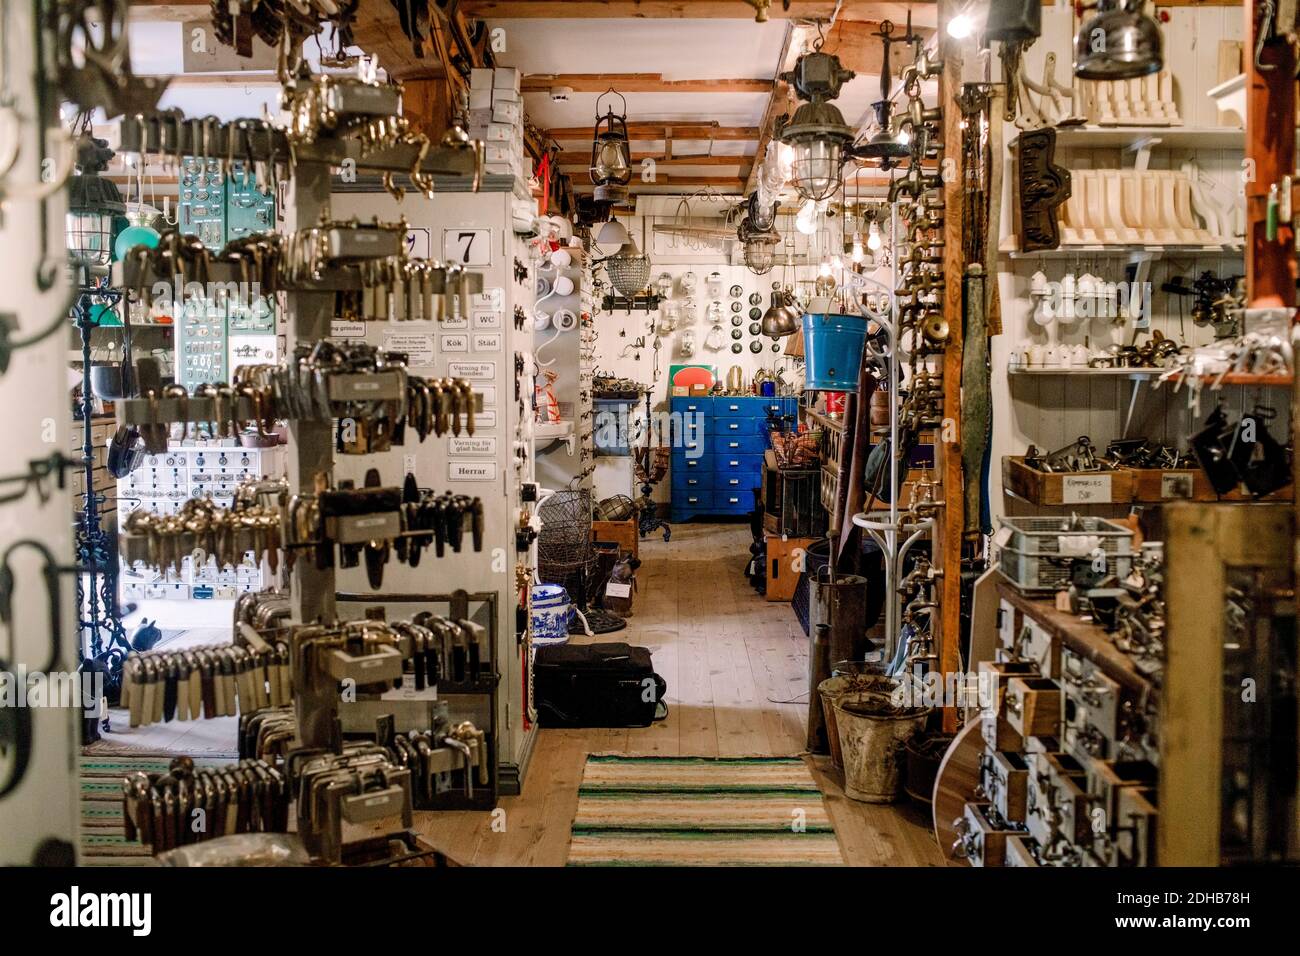 Various equipment at illuminated hardware store Stock Photo